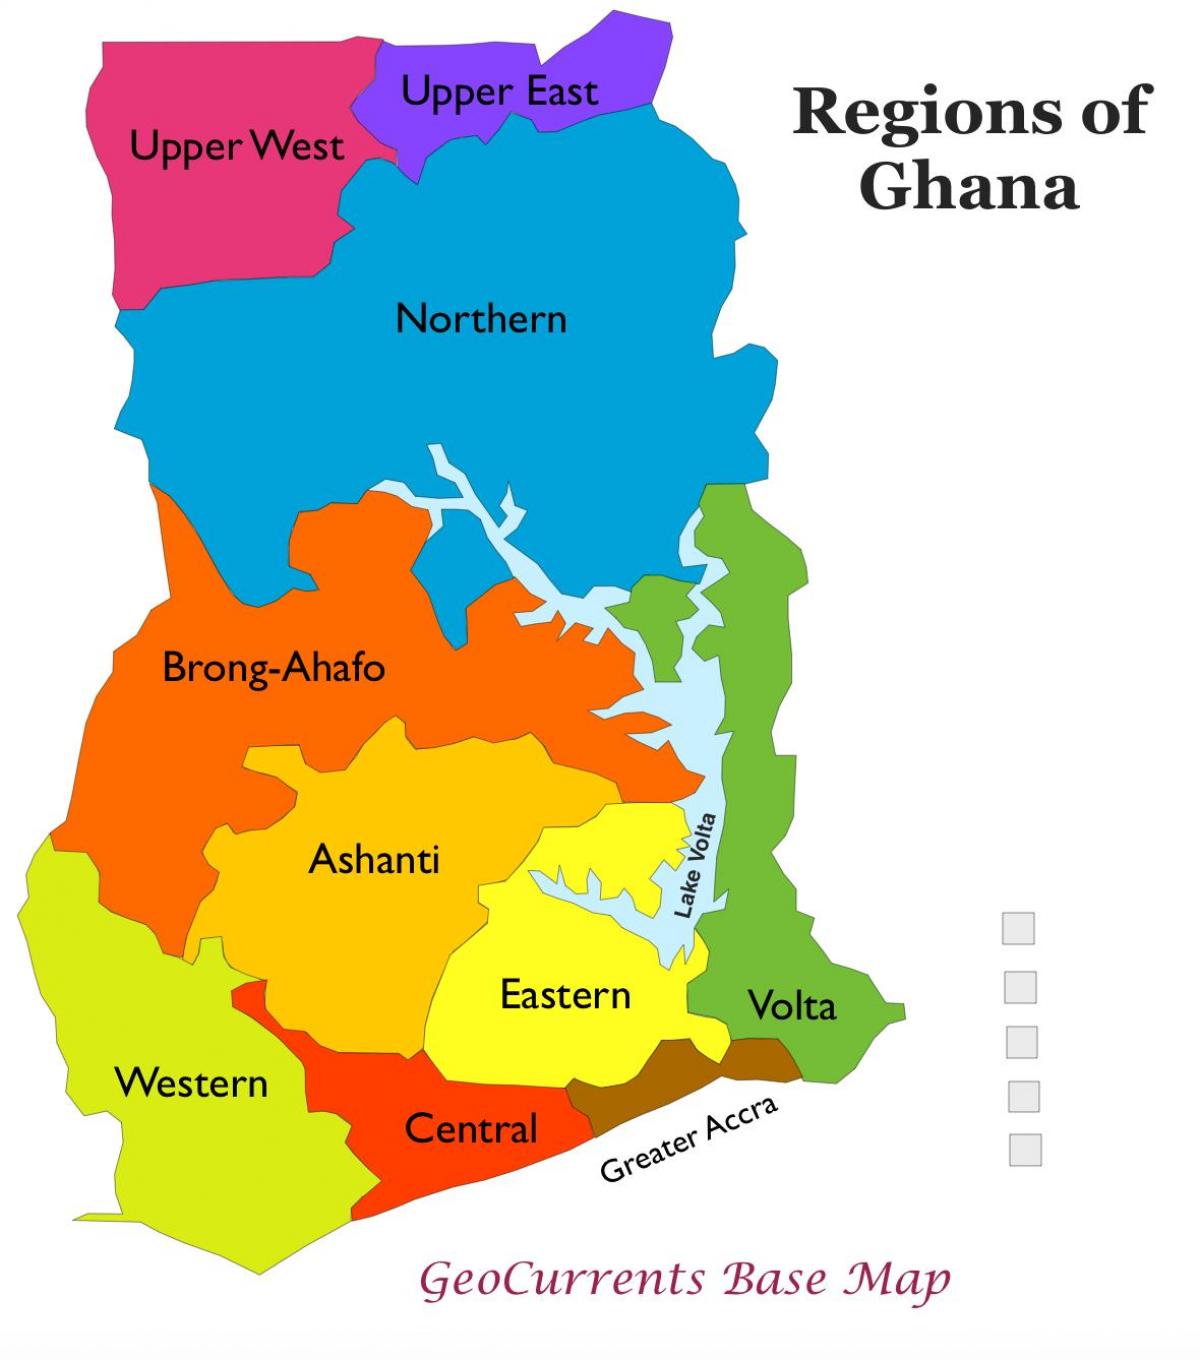 térkép ghána mutatja régiók